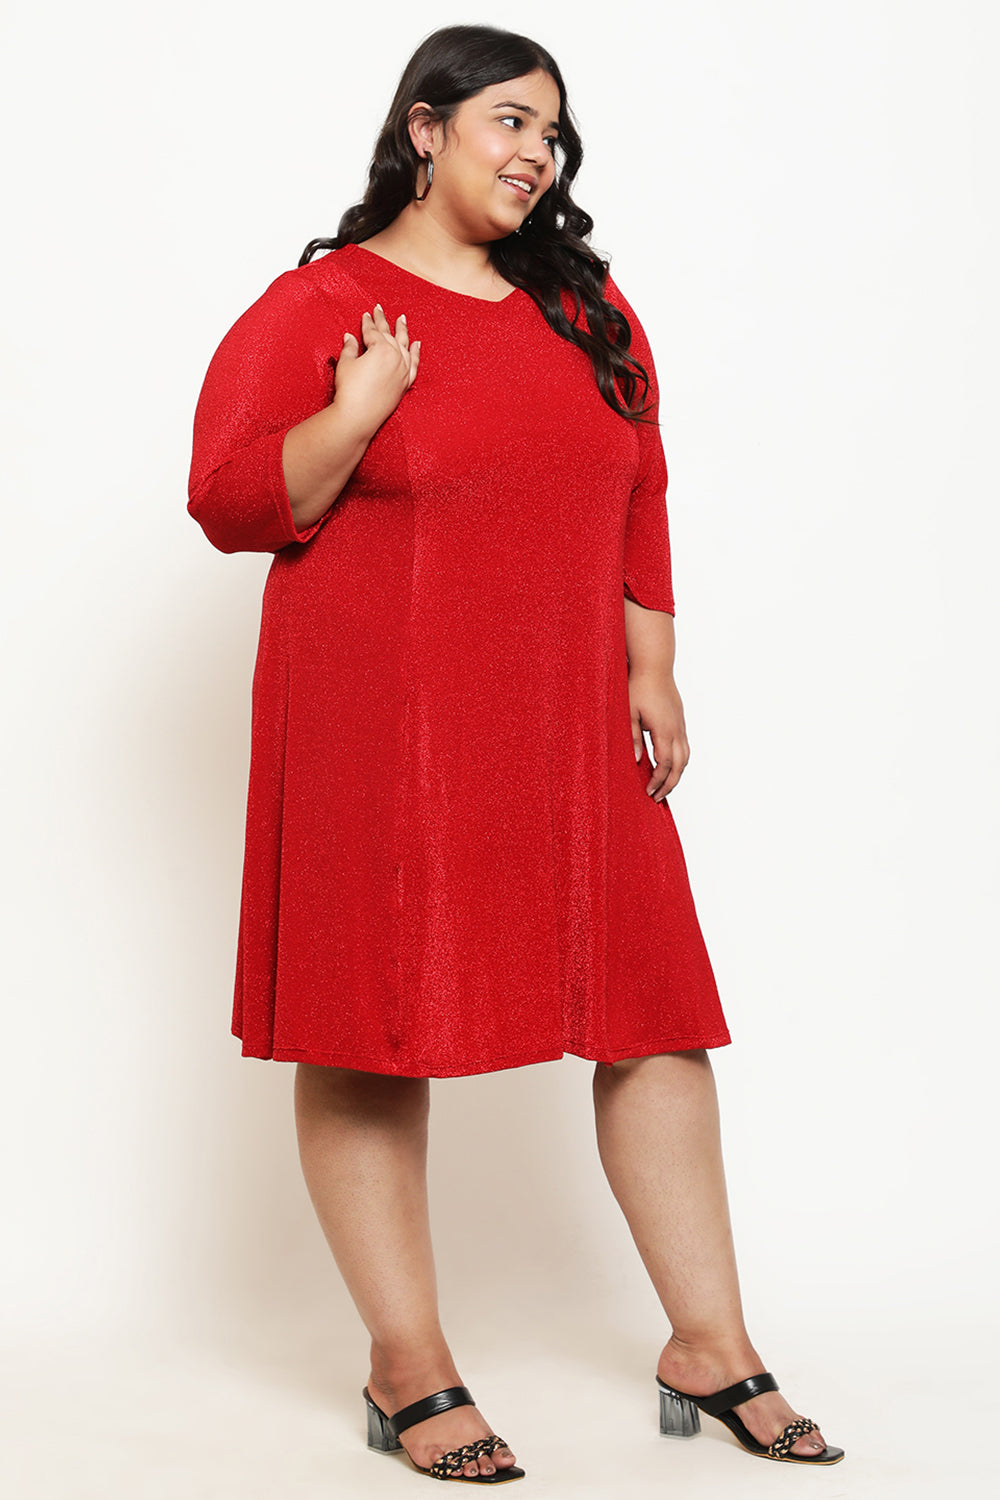 Buy Plus Size Red Lurex Dress